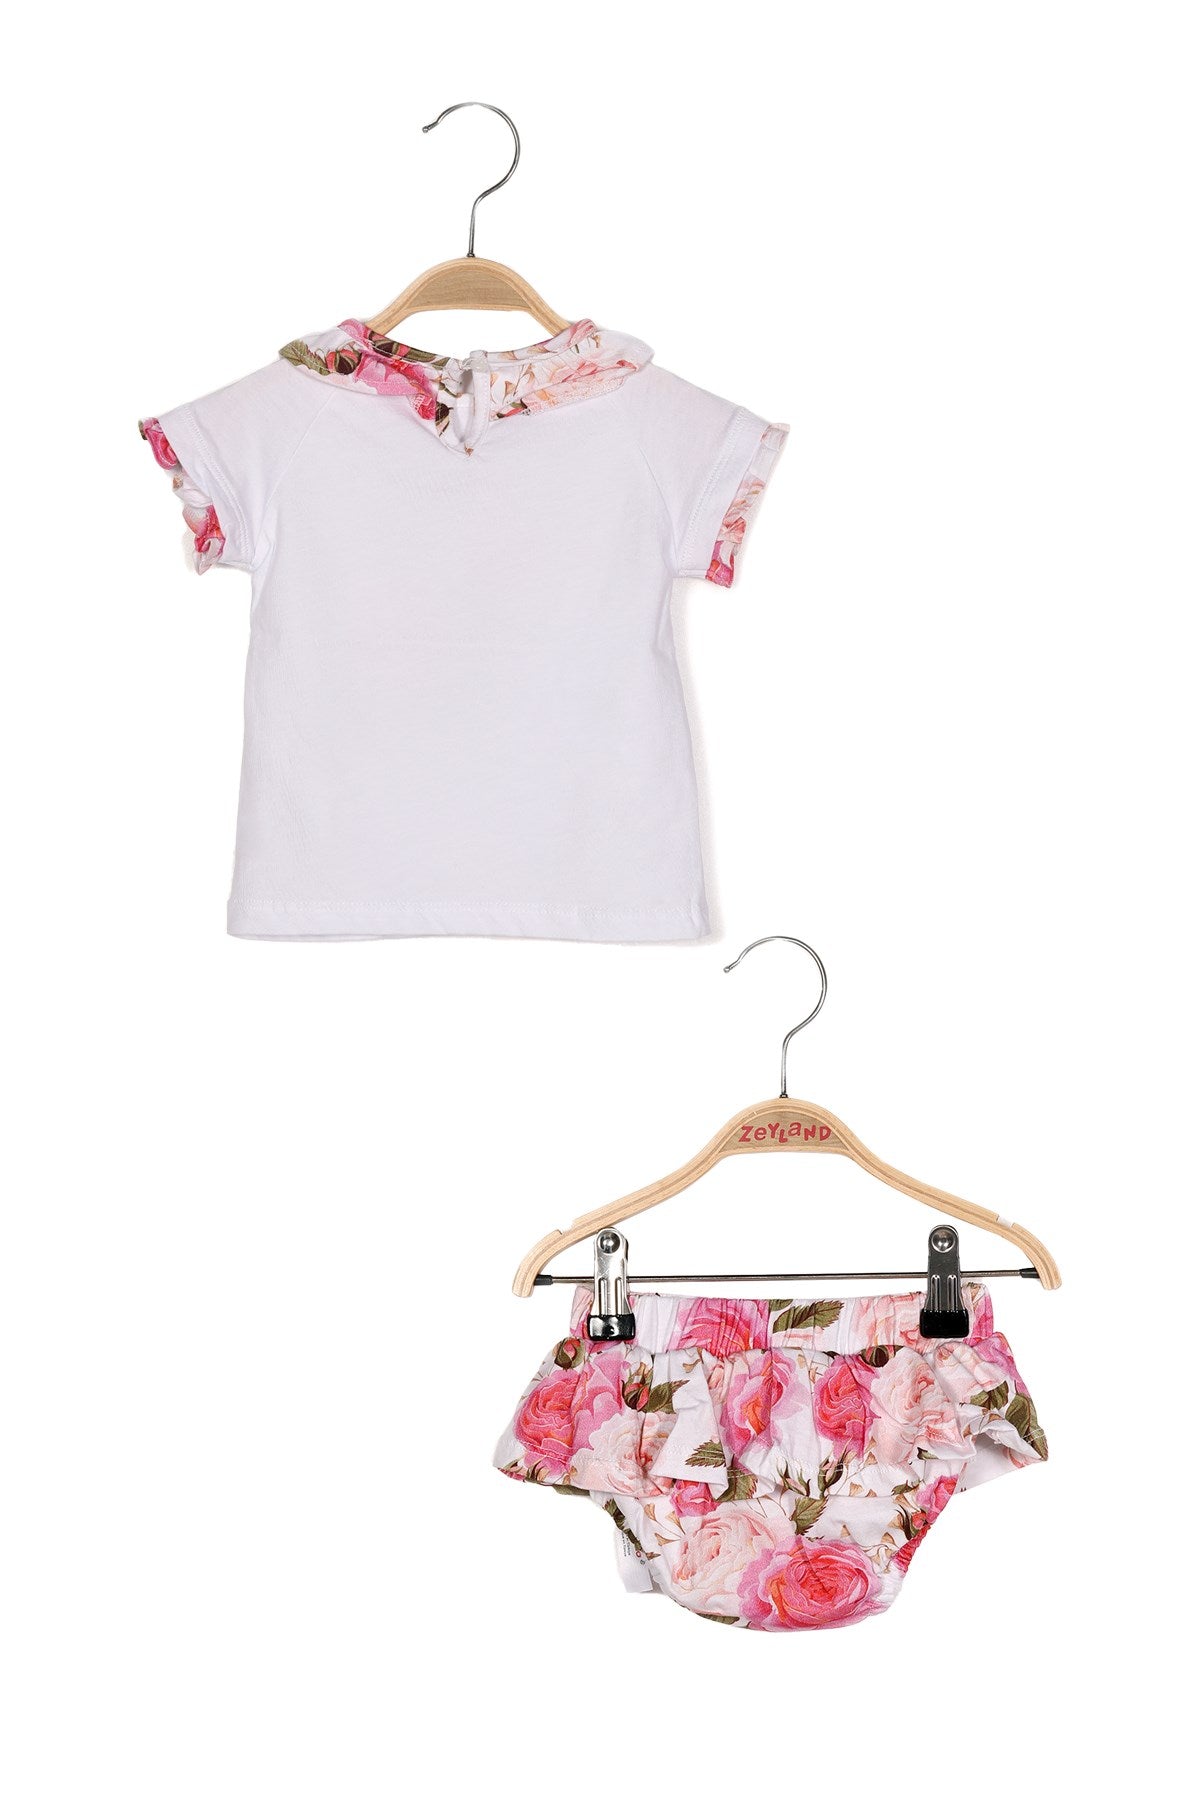 Kız Bebek Gül Baskılı Yakası Fırfırlı T-shirt ve Baskılı Fırfırlı Külot Takım-1